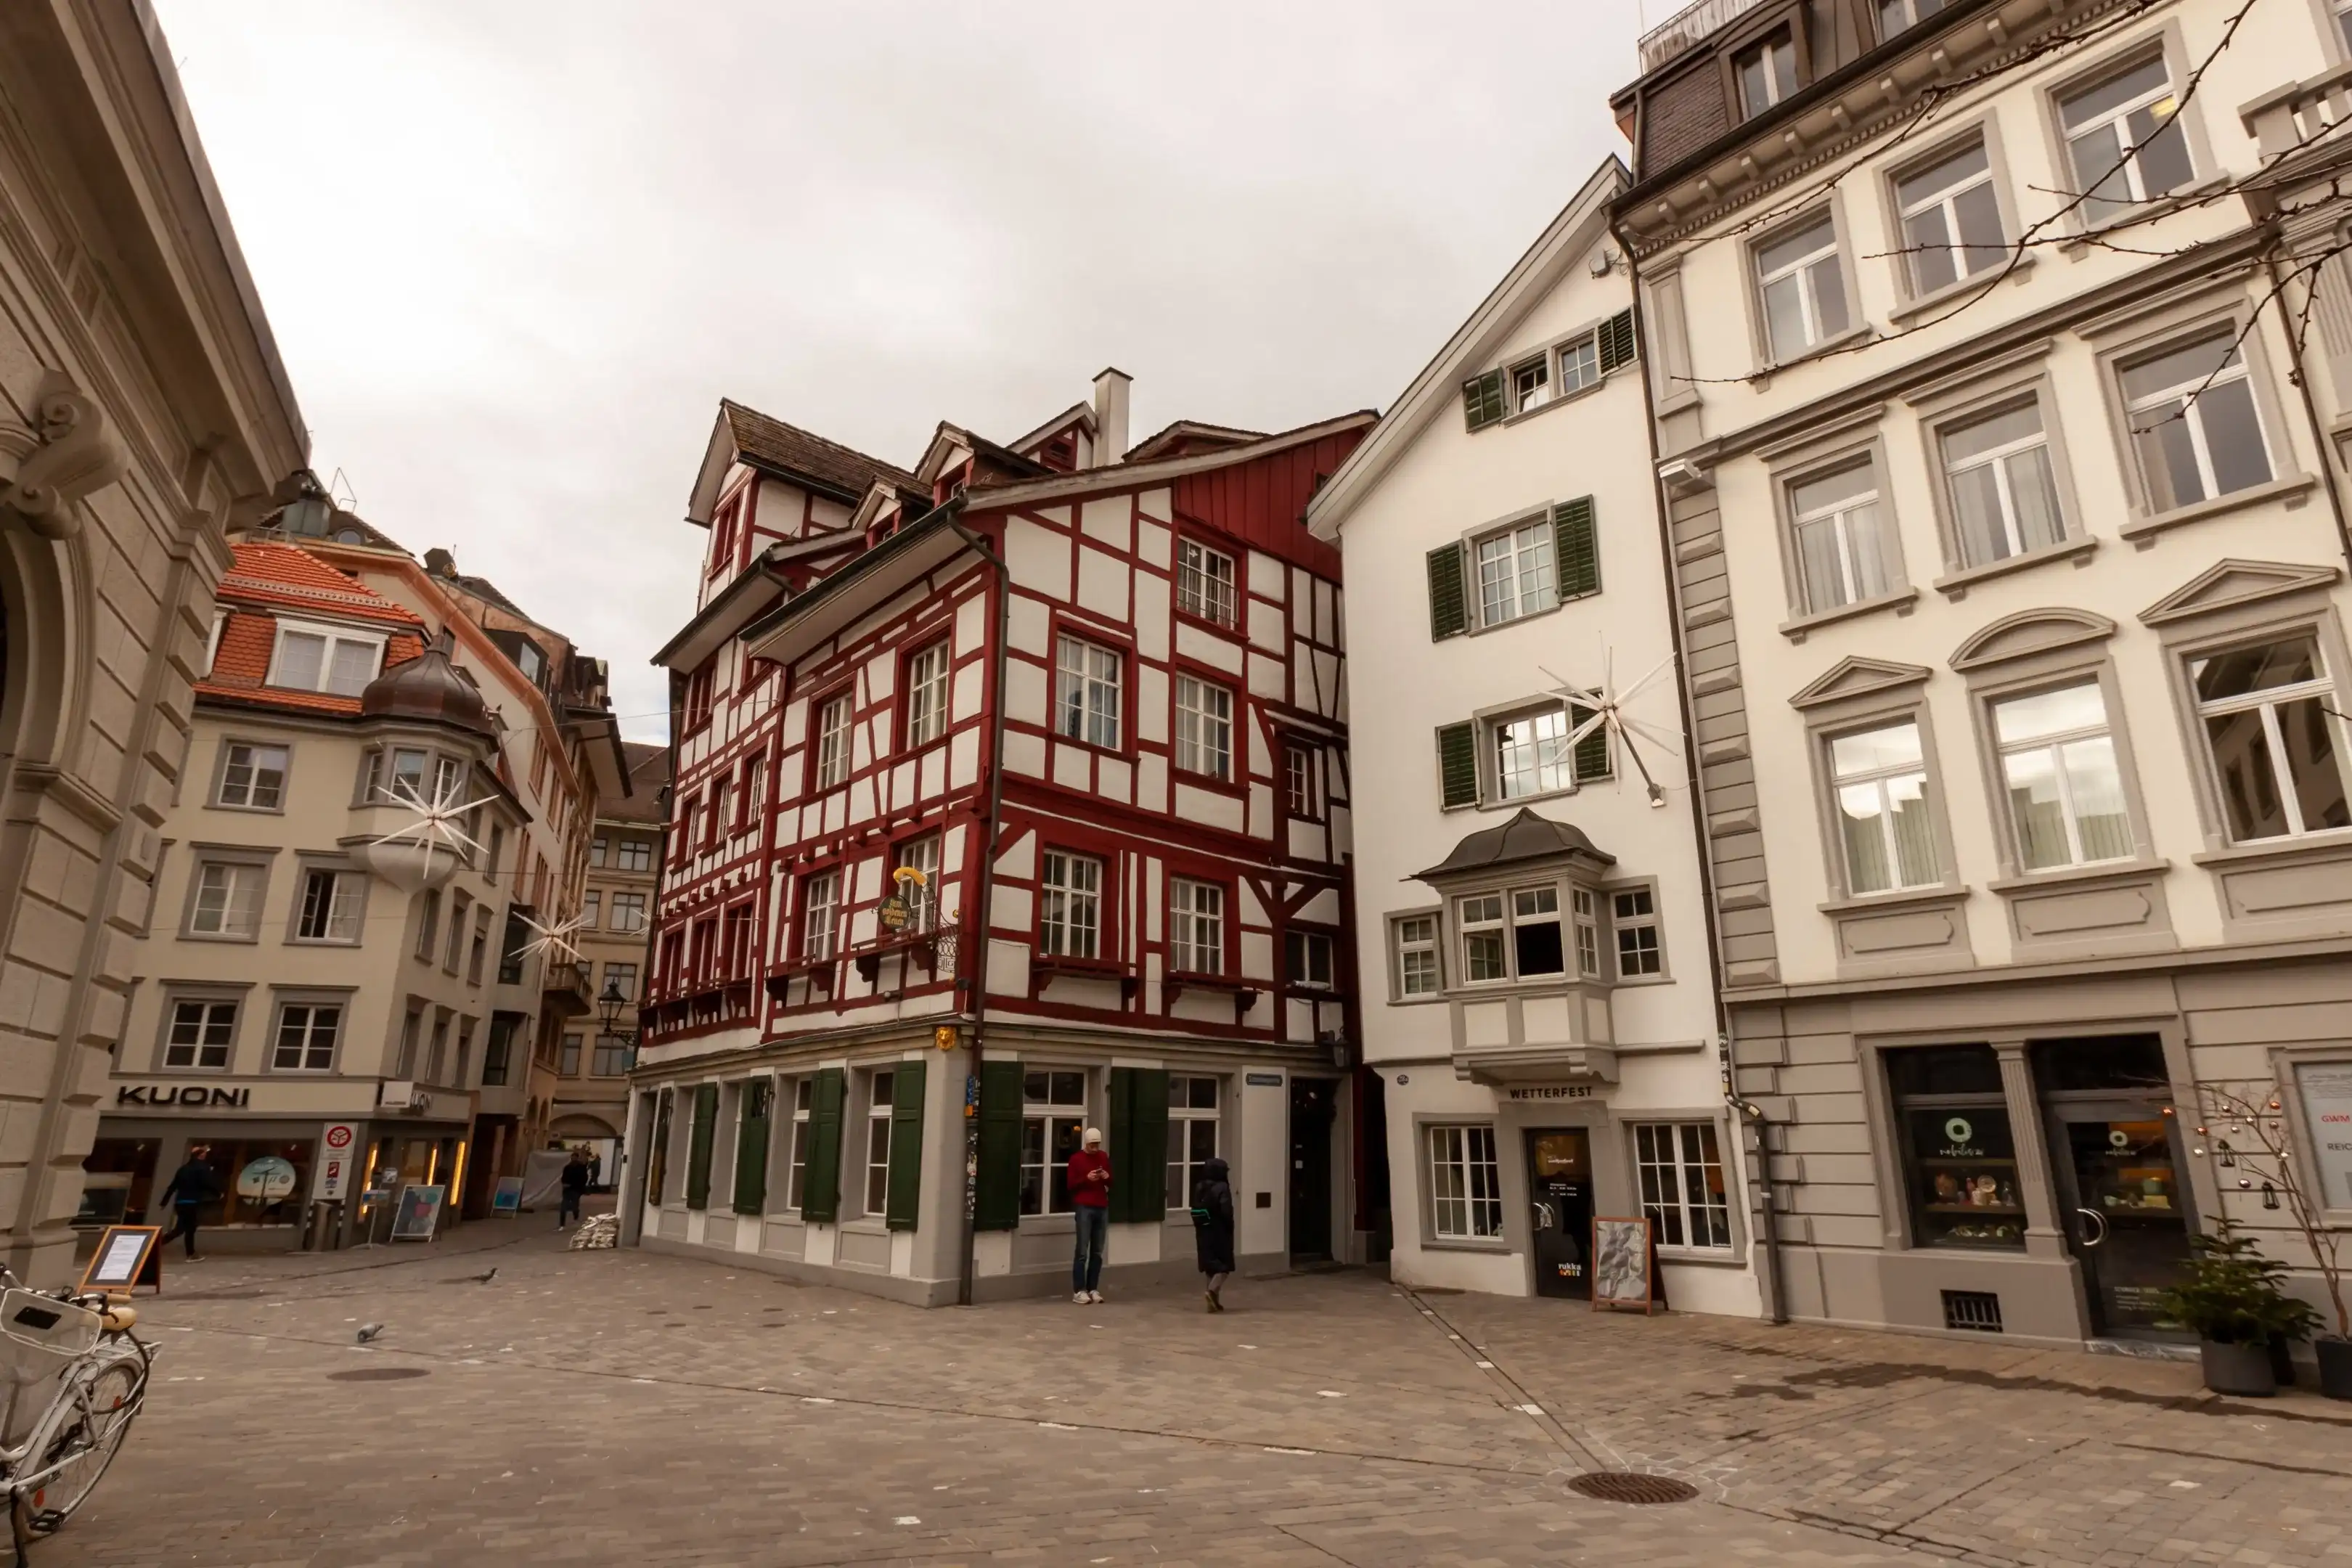 Best Sankt Gallen hotels. Cheap hotels in Sankt Gallen, Switzerland